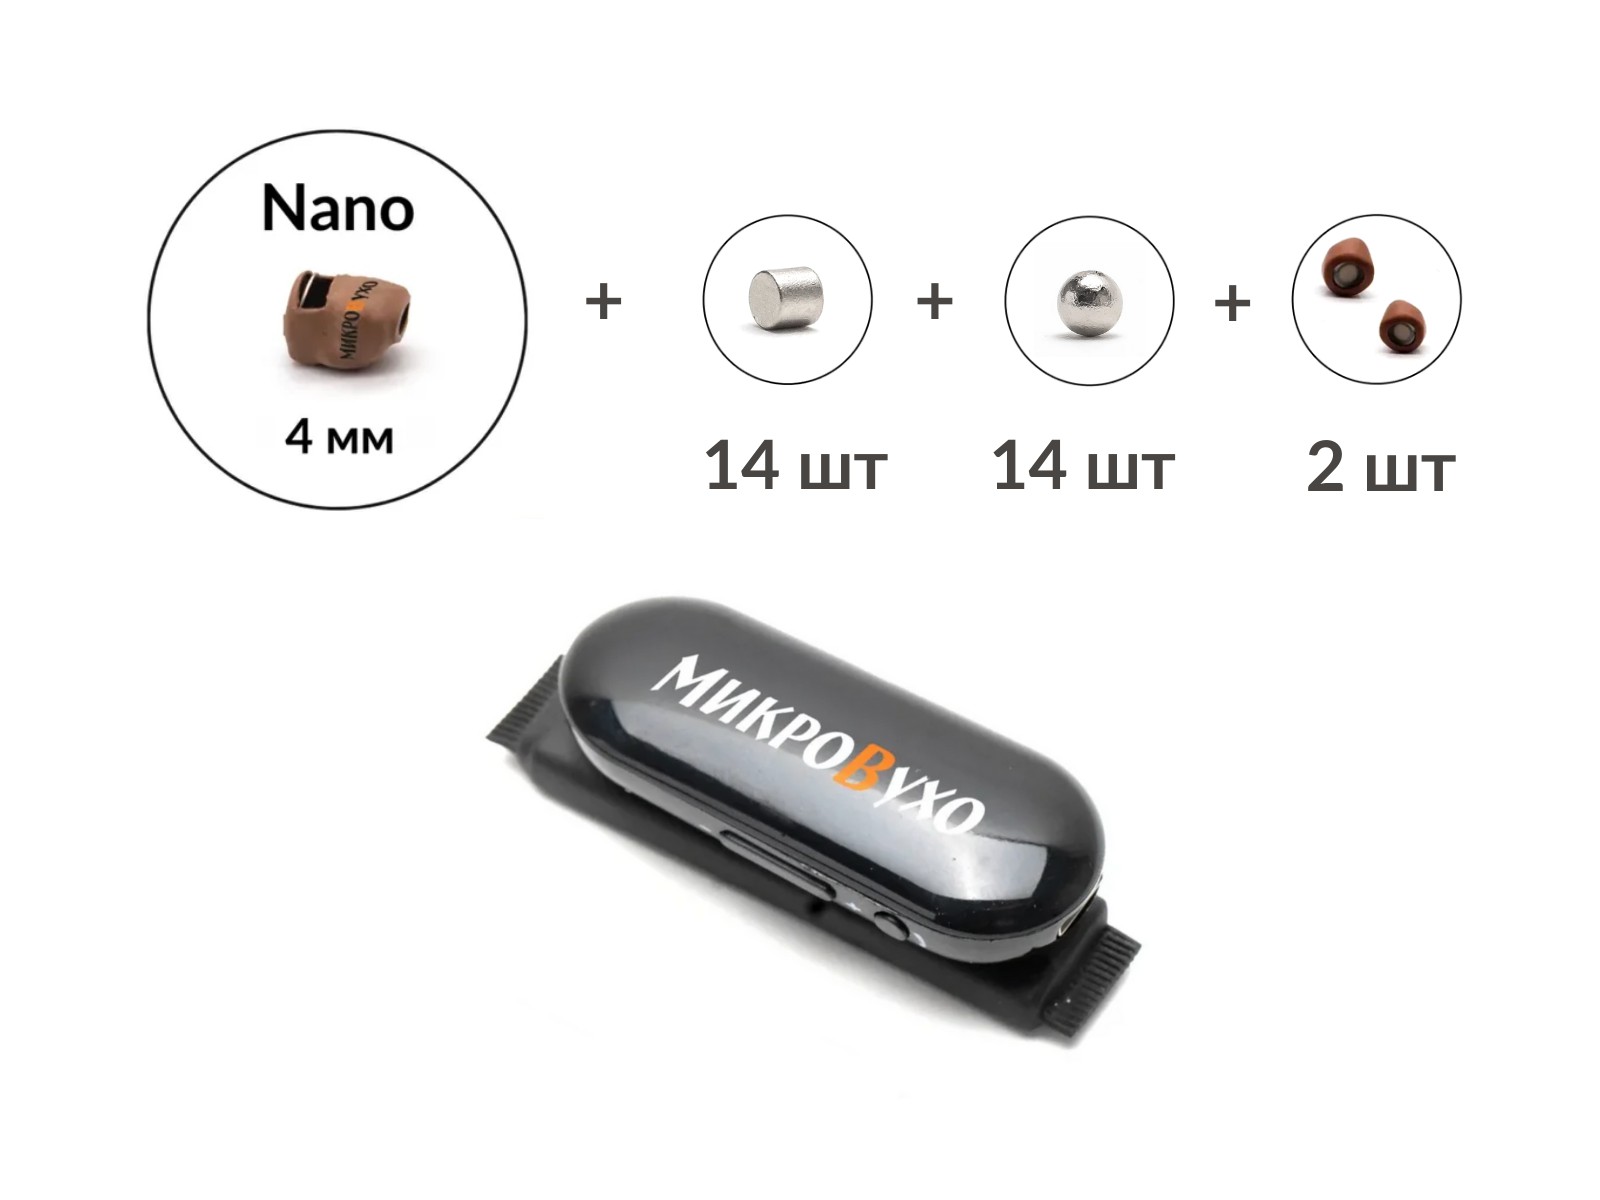 Универсальная гарнитура Bluetooth Box Pro Plus c капсулой К5 4 мм и магнитами 2 мм